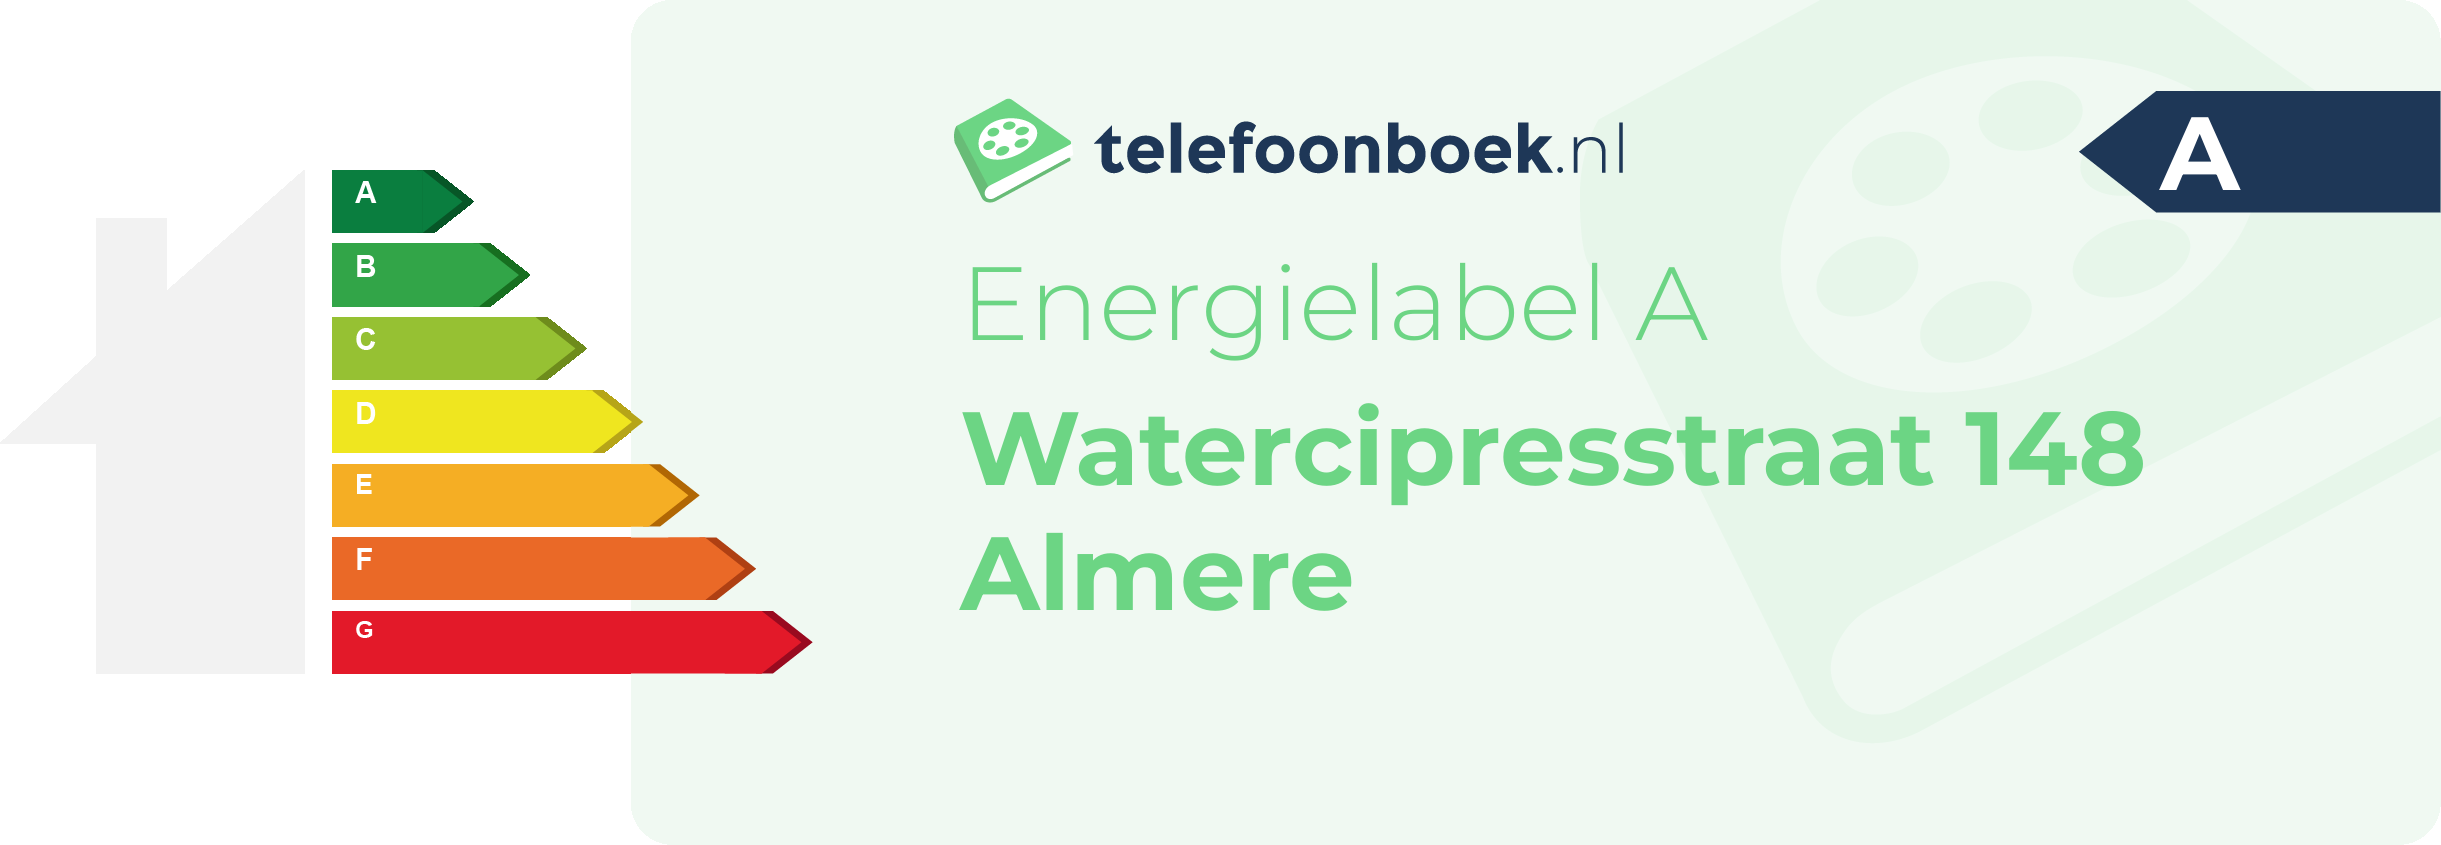 Energielabel Watercipresstraat 148 Almere